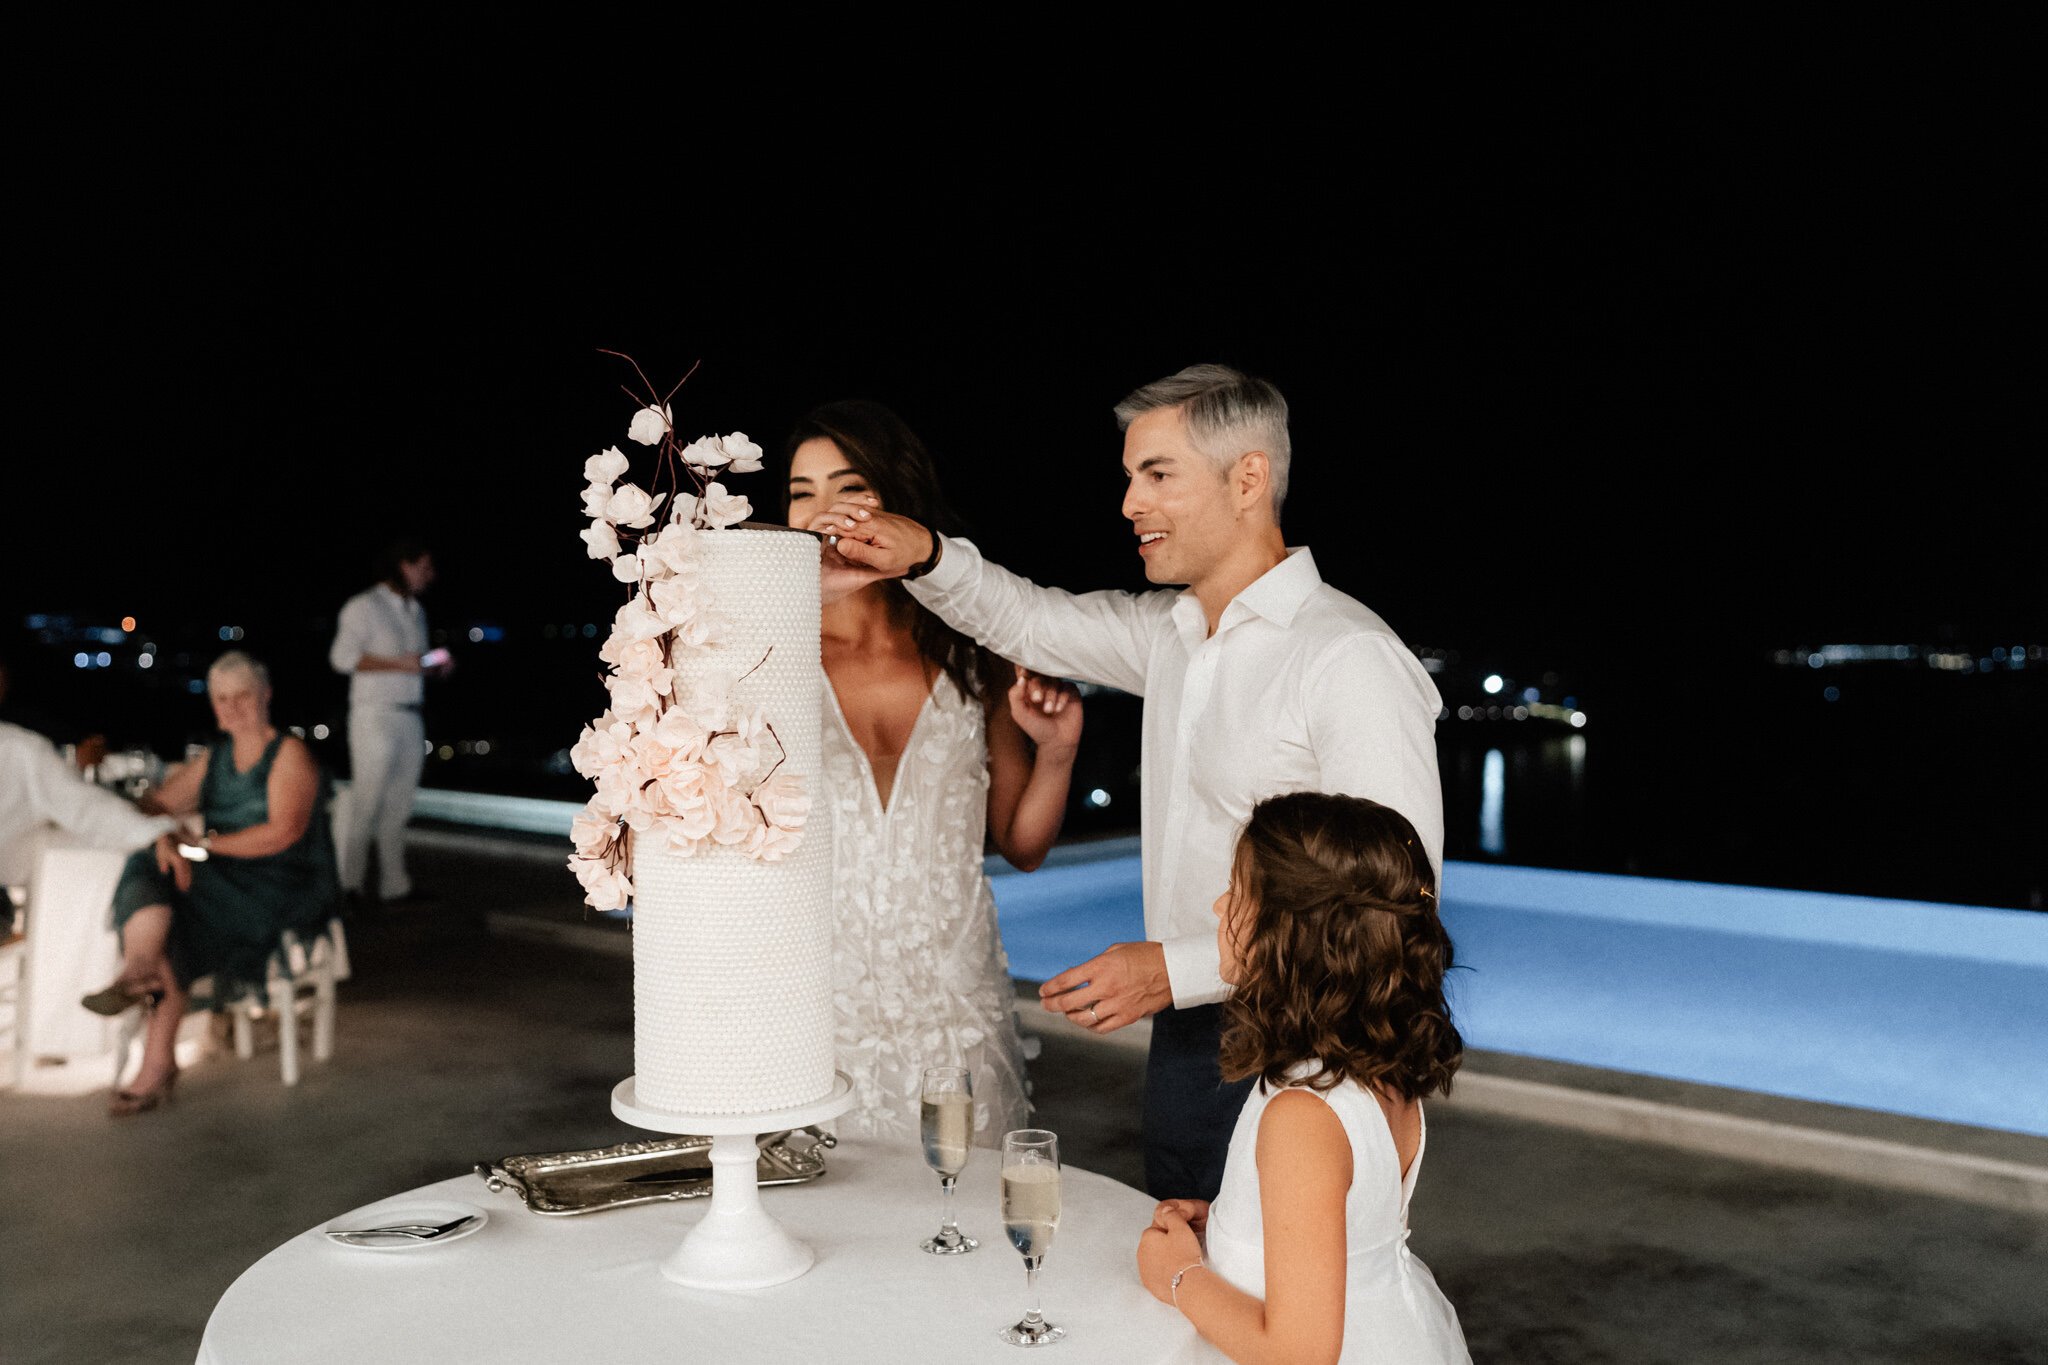 Greece+Santorini+Rhodes+wedding+photogtaphy-209.jpg